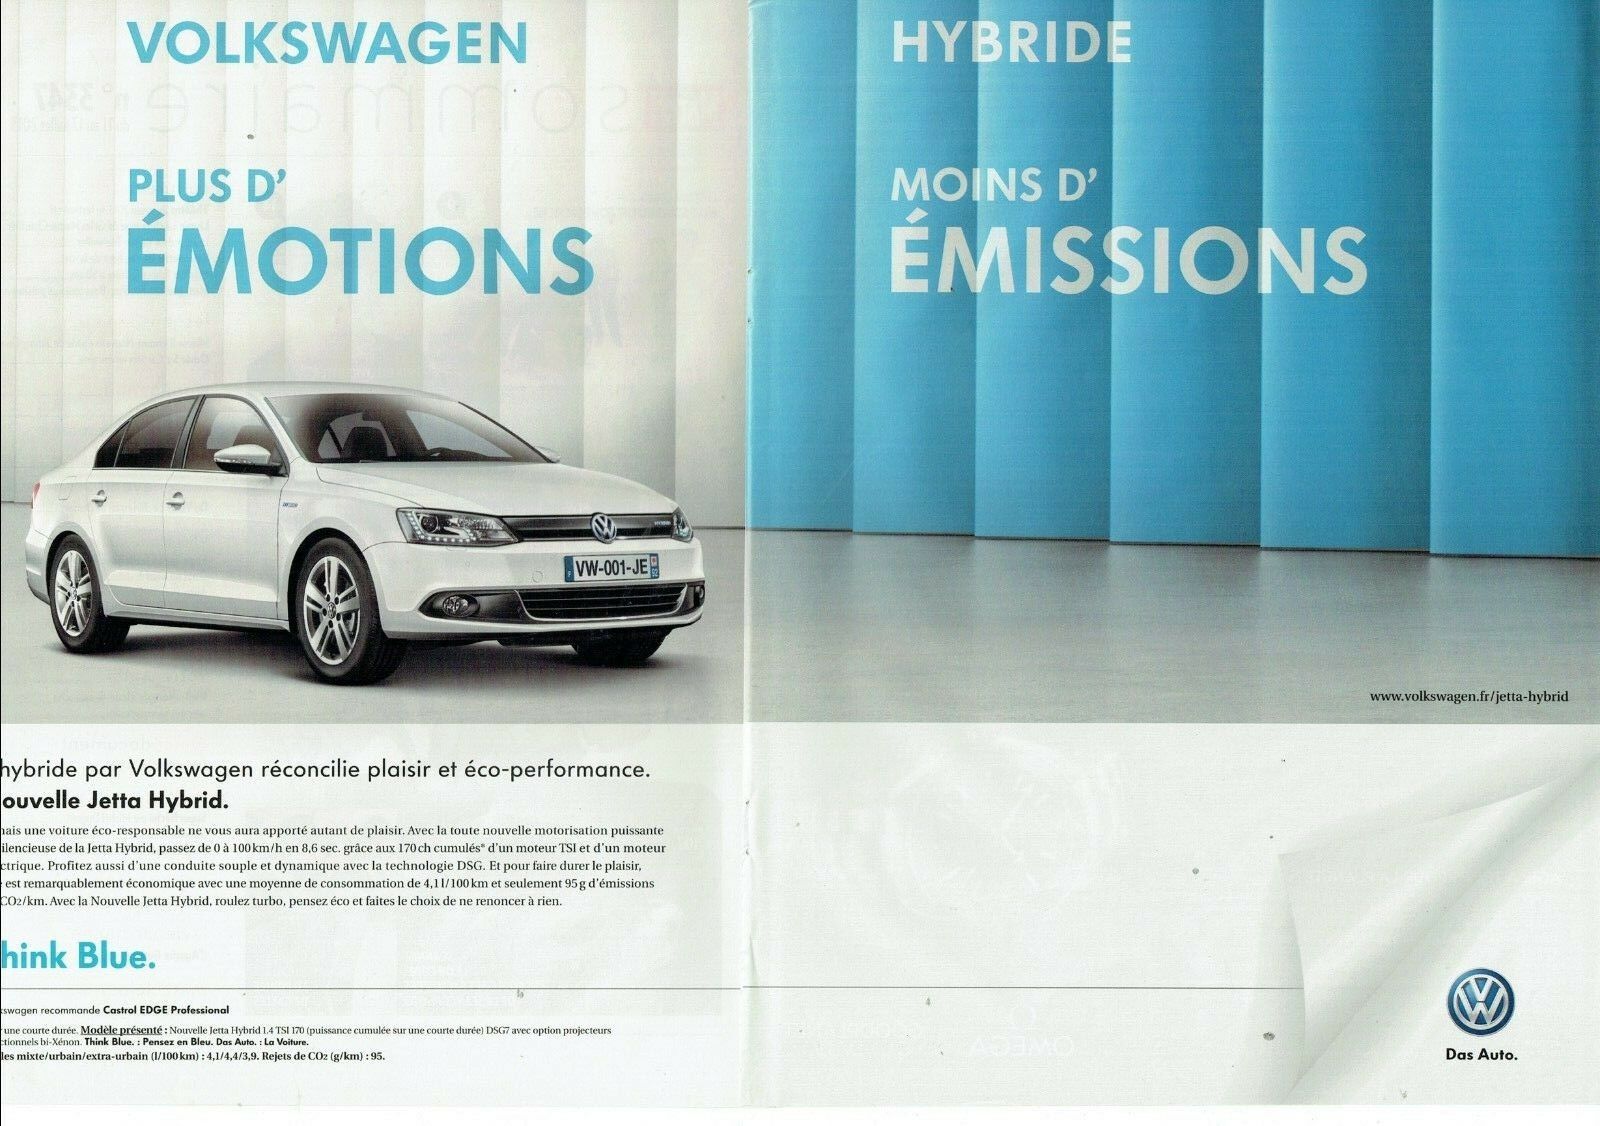 2012, Volkswagen